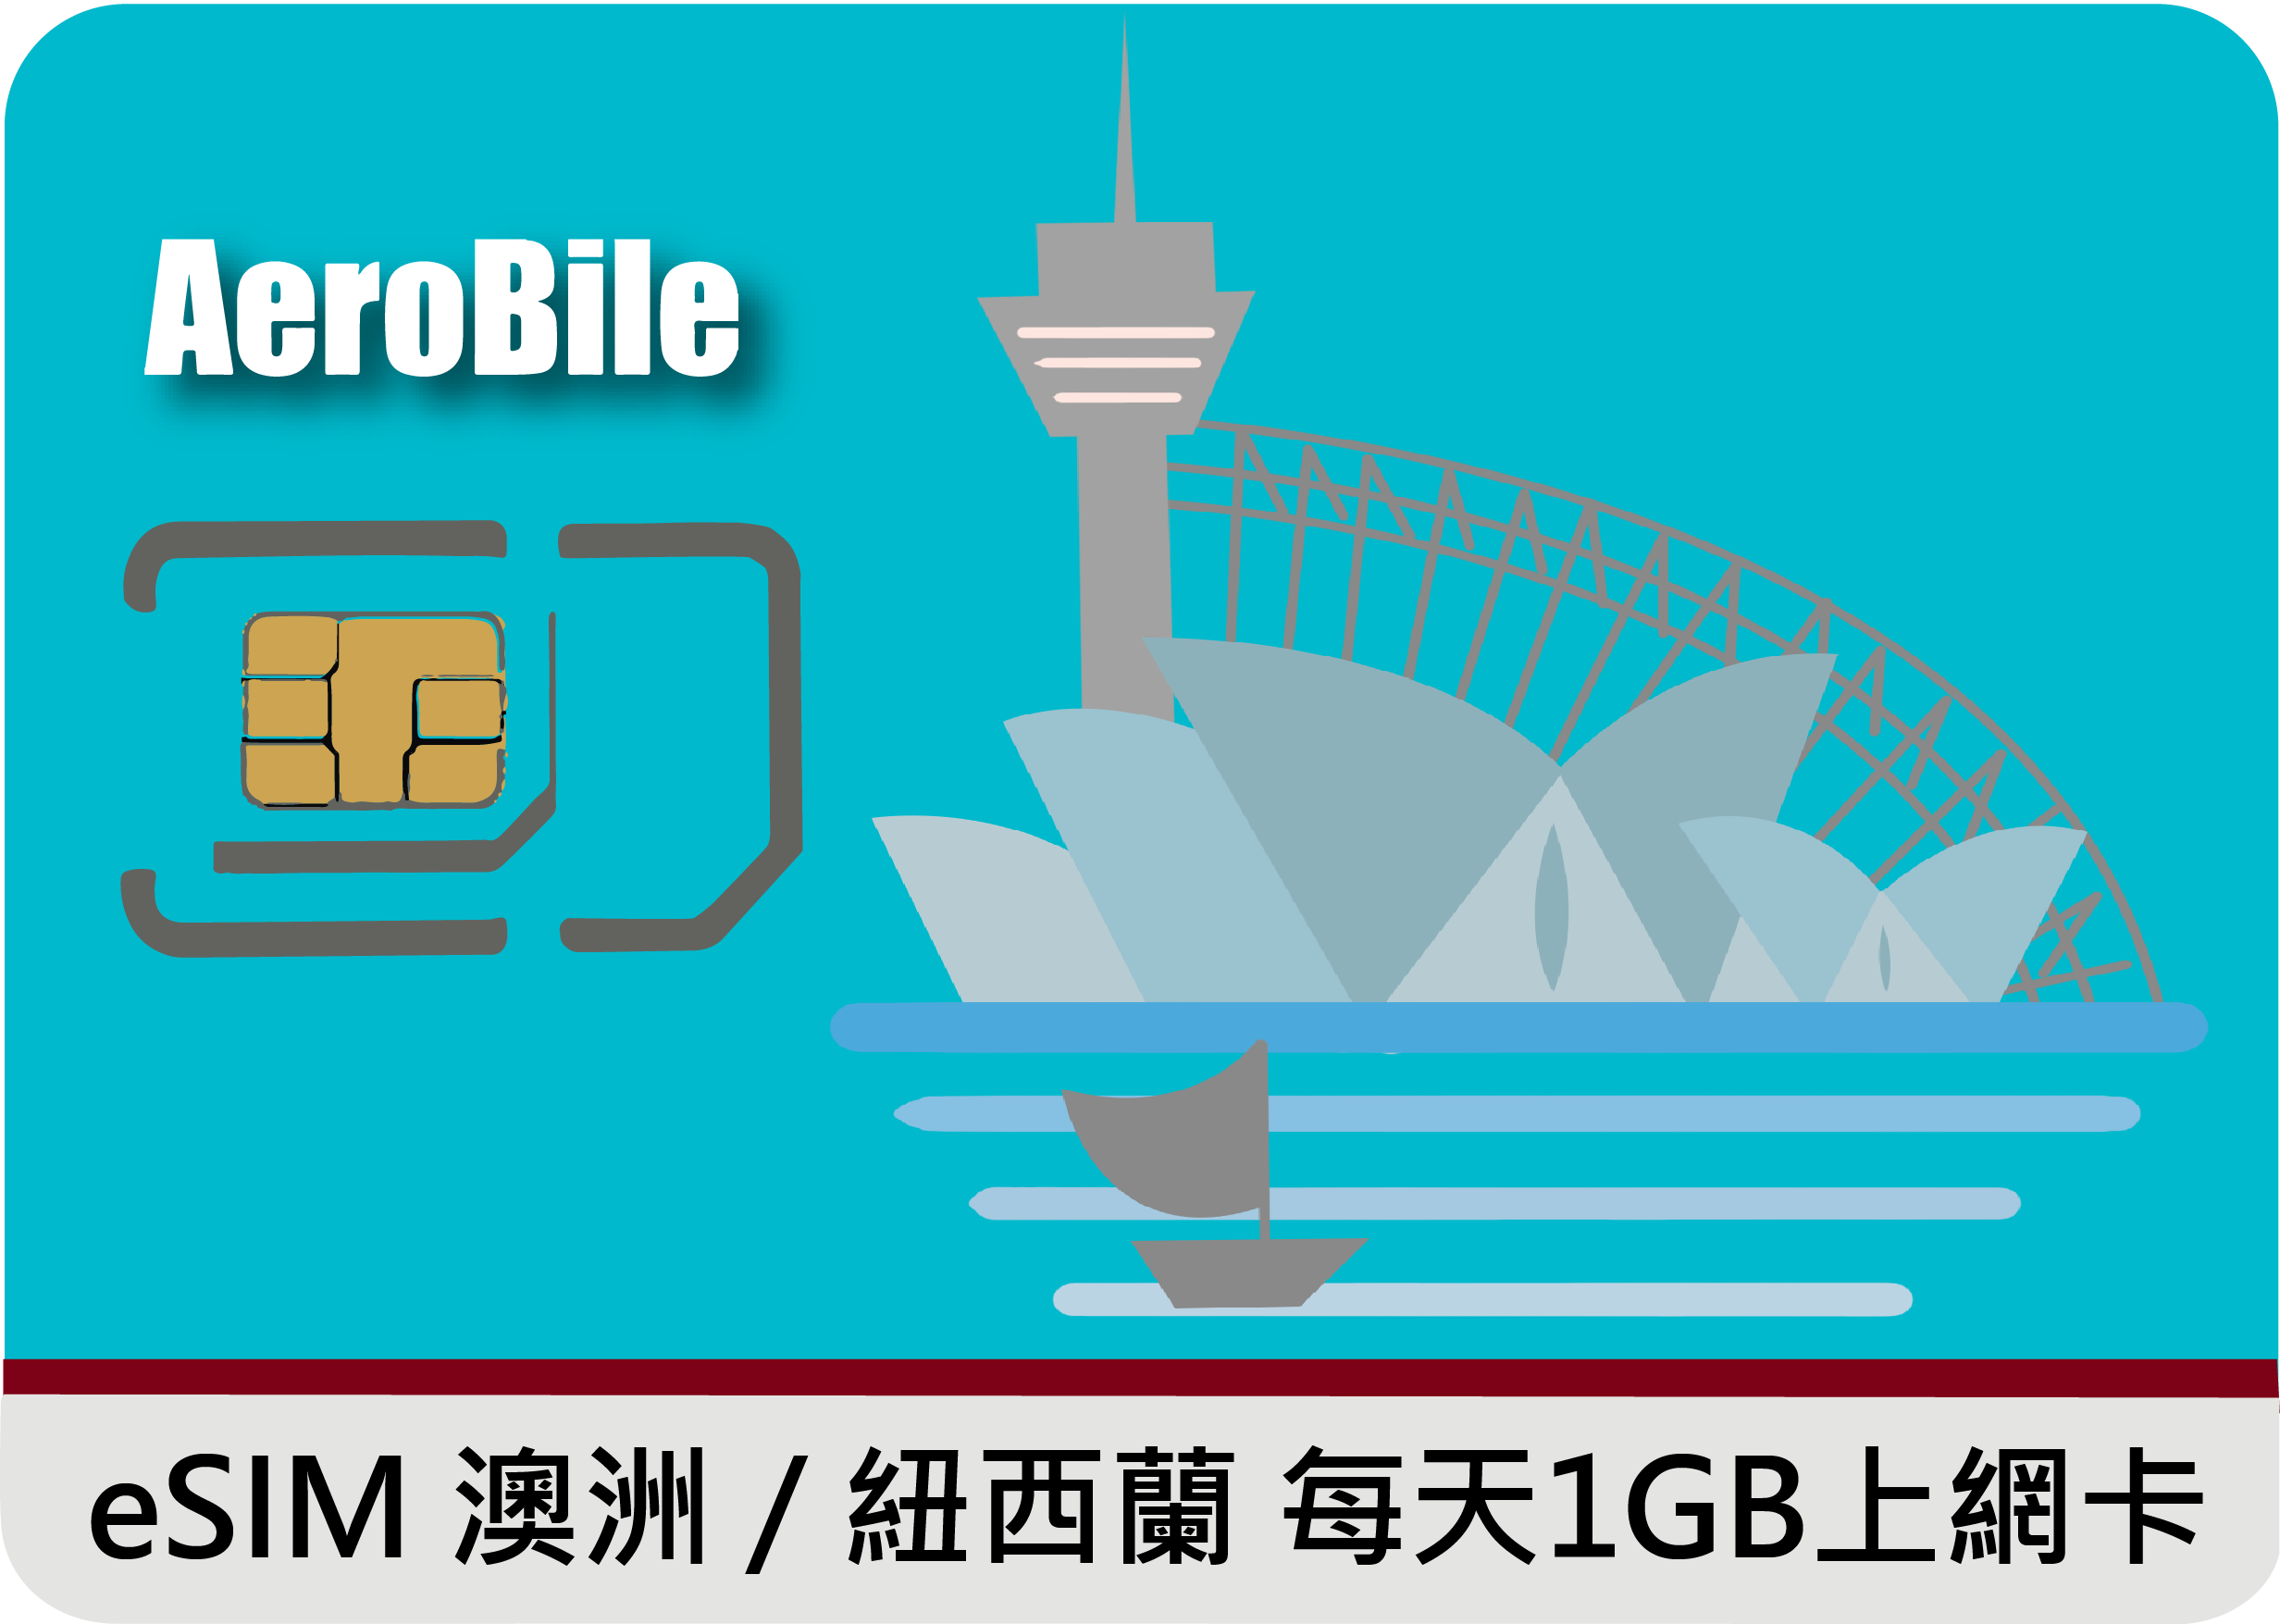 eSIM澳洲/紐西蘭每天1GB上網卡 (B)